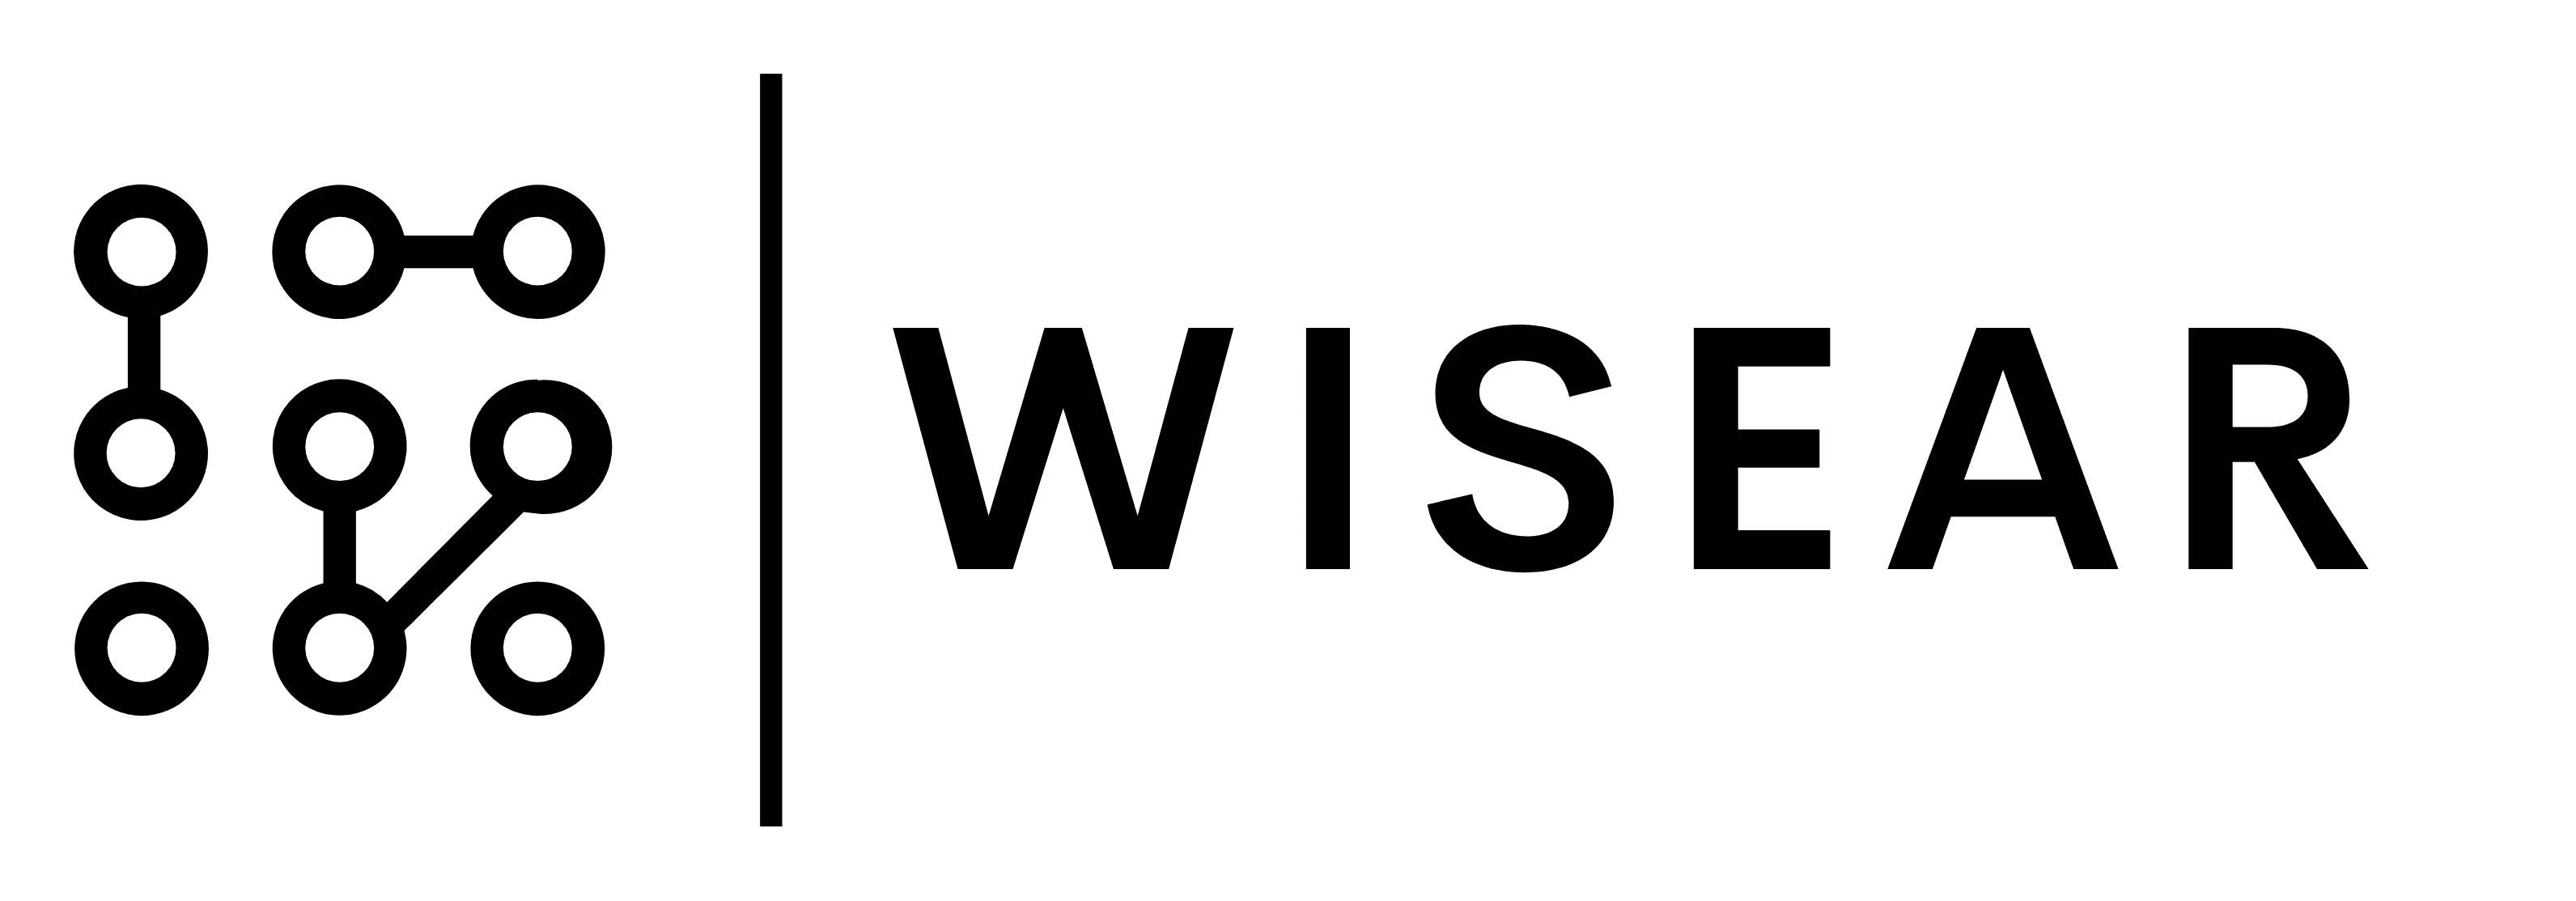 WISEAR - 2021 - Digital/data